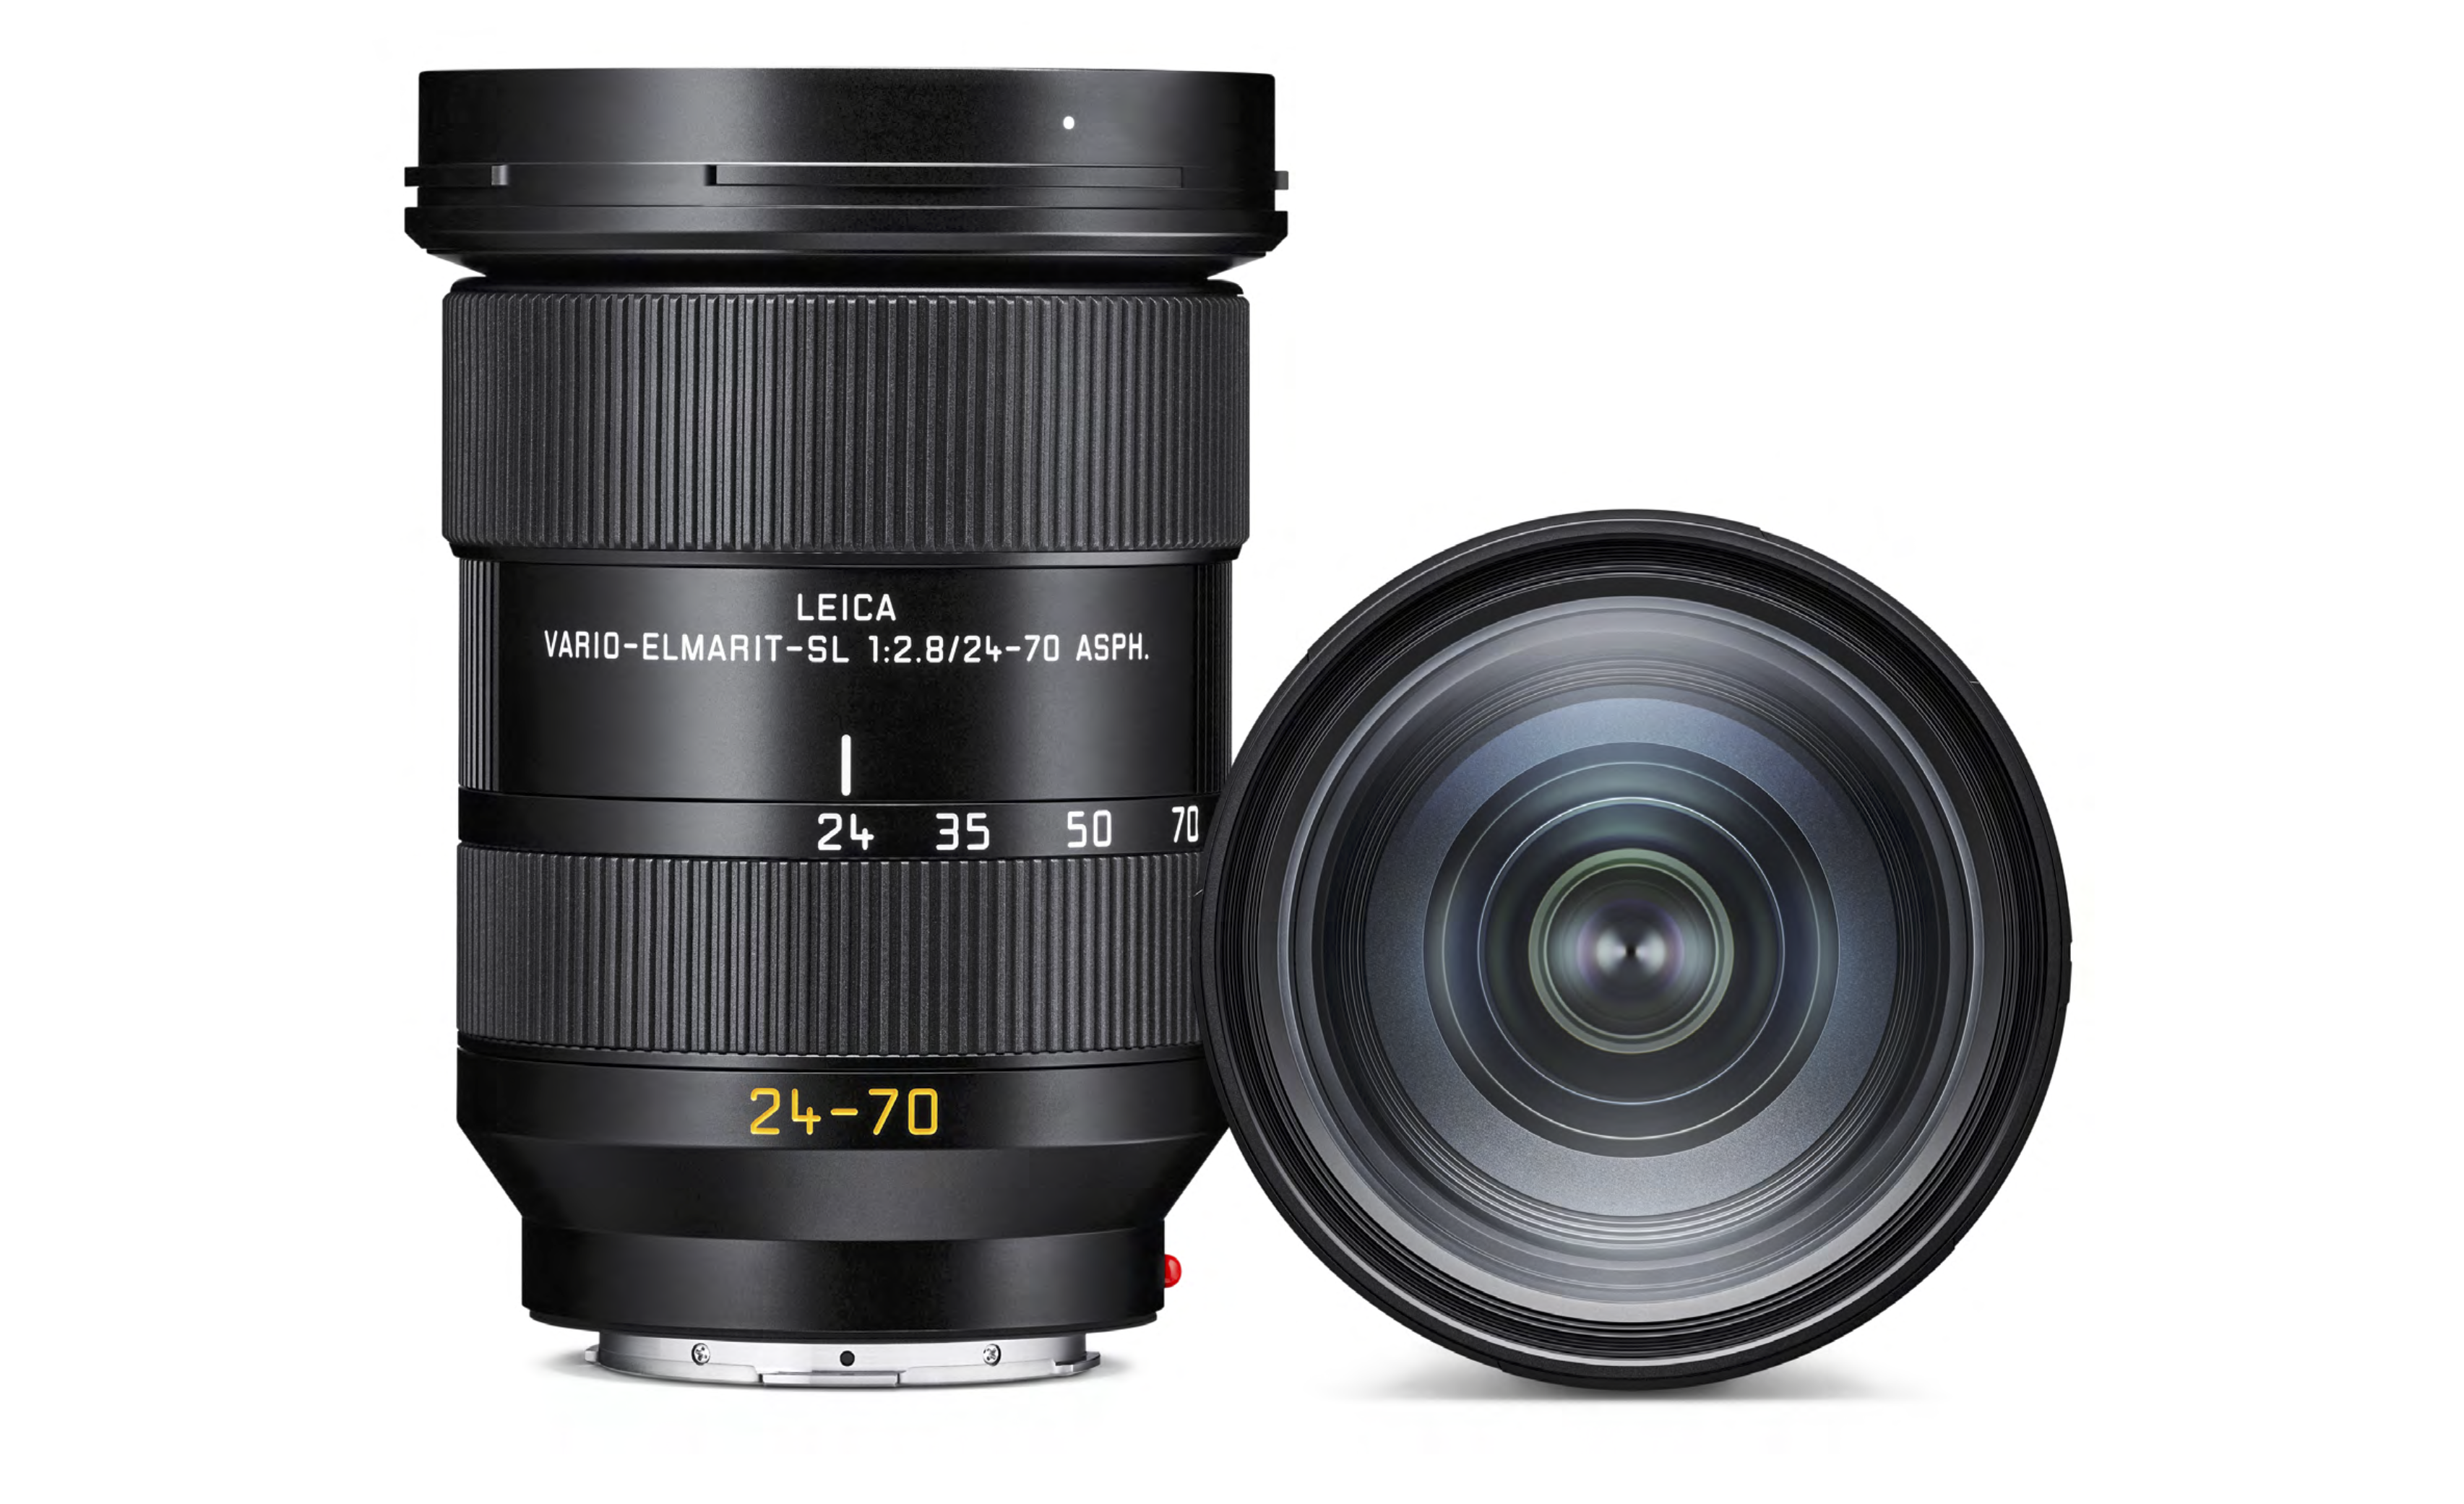 The Leica 24-70mm F2.8 ASPH SL Addresses a Big Concern